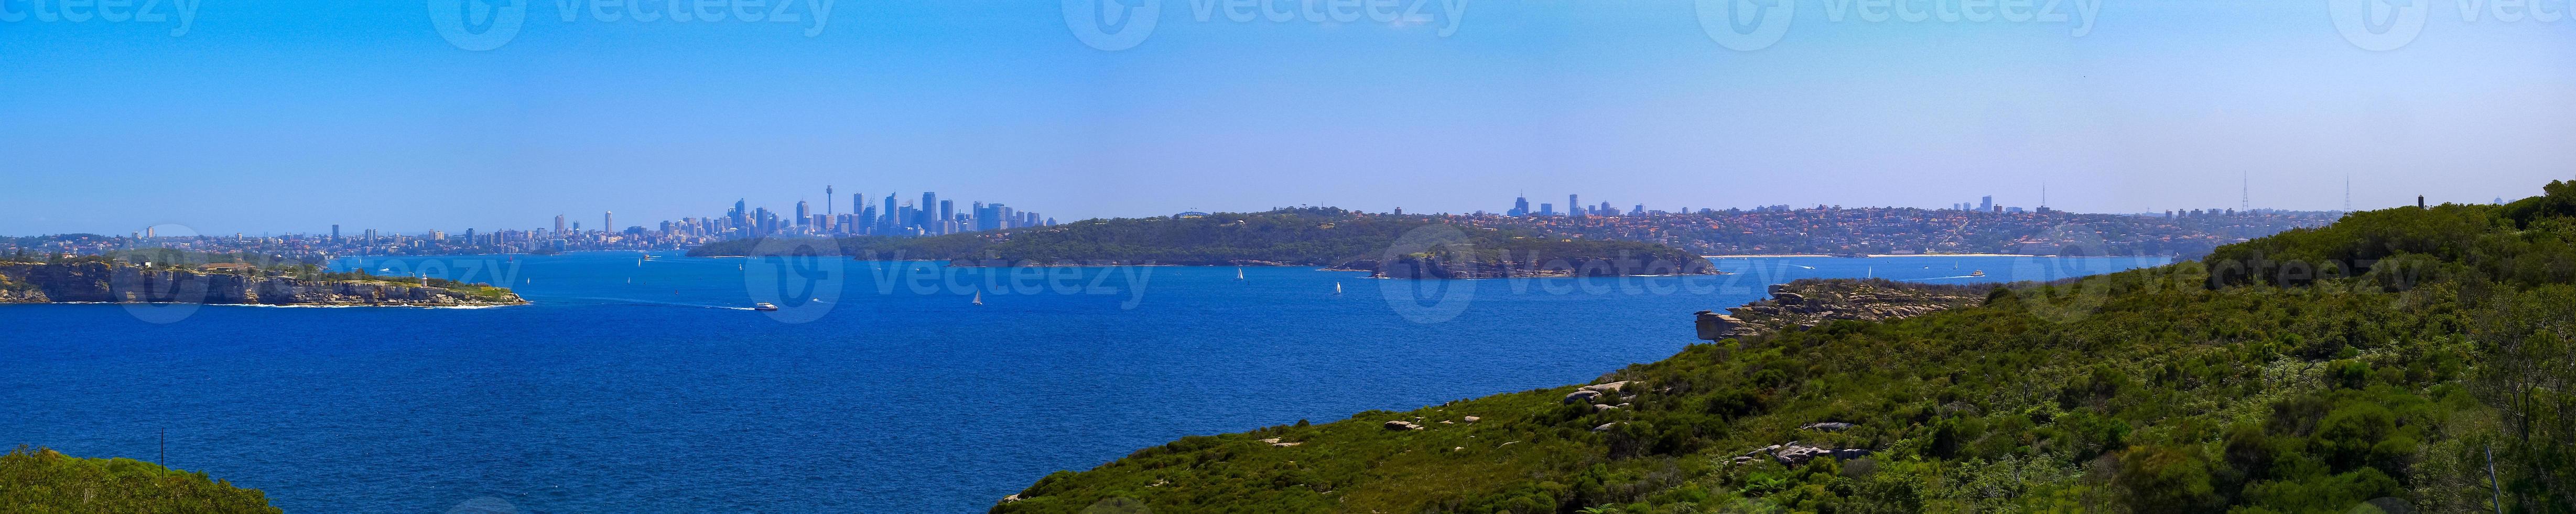 vista panorâmica do horizonte de sydney na austrália durante o dia. foto